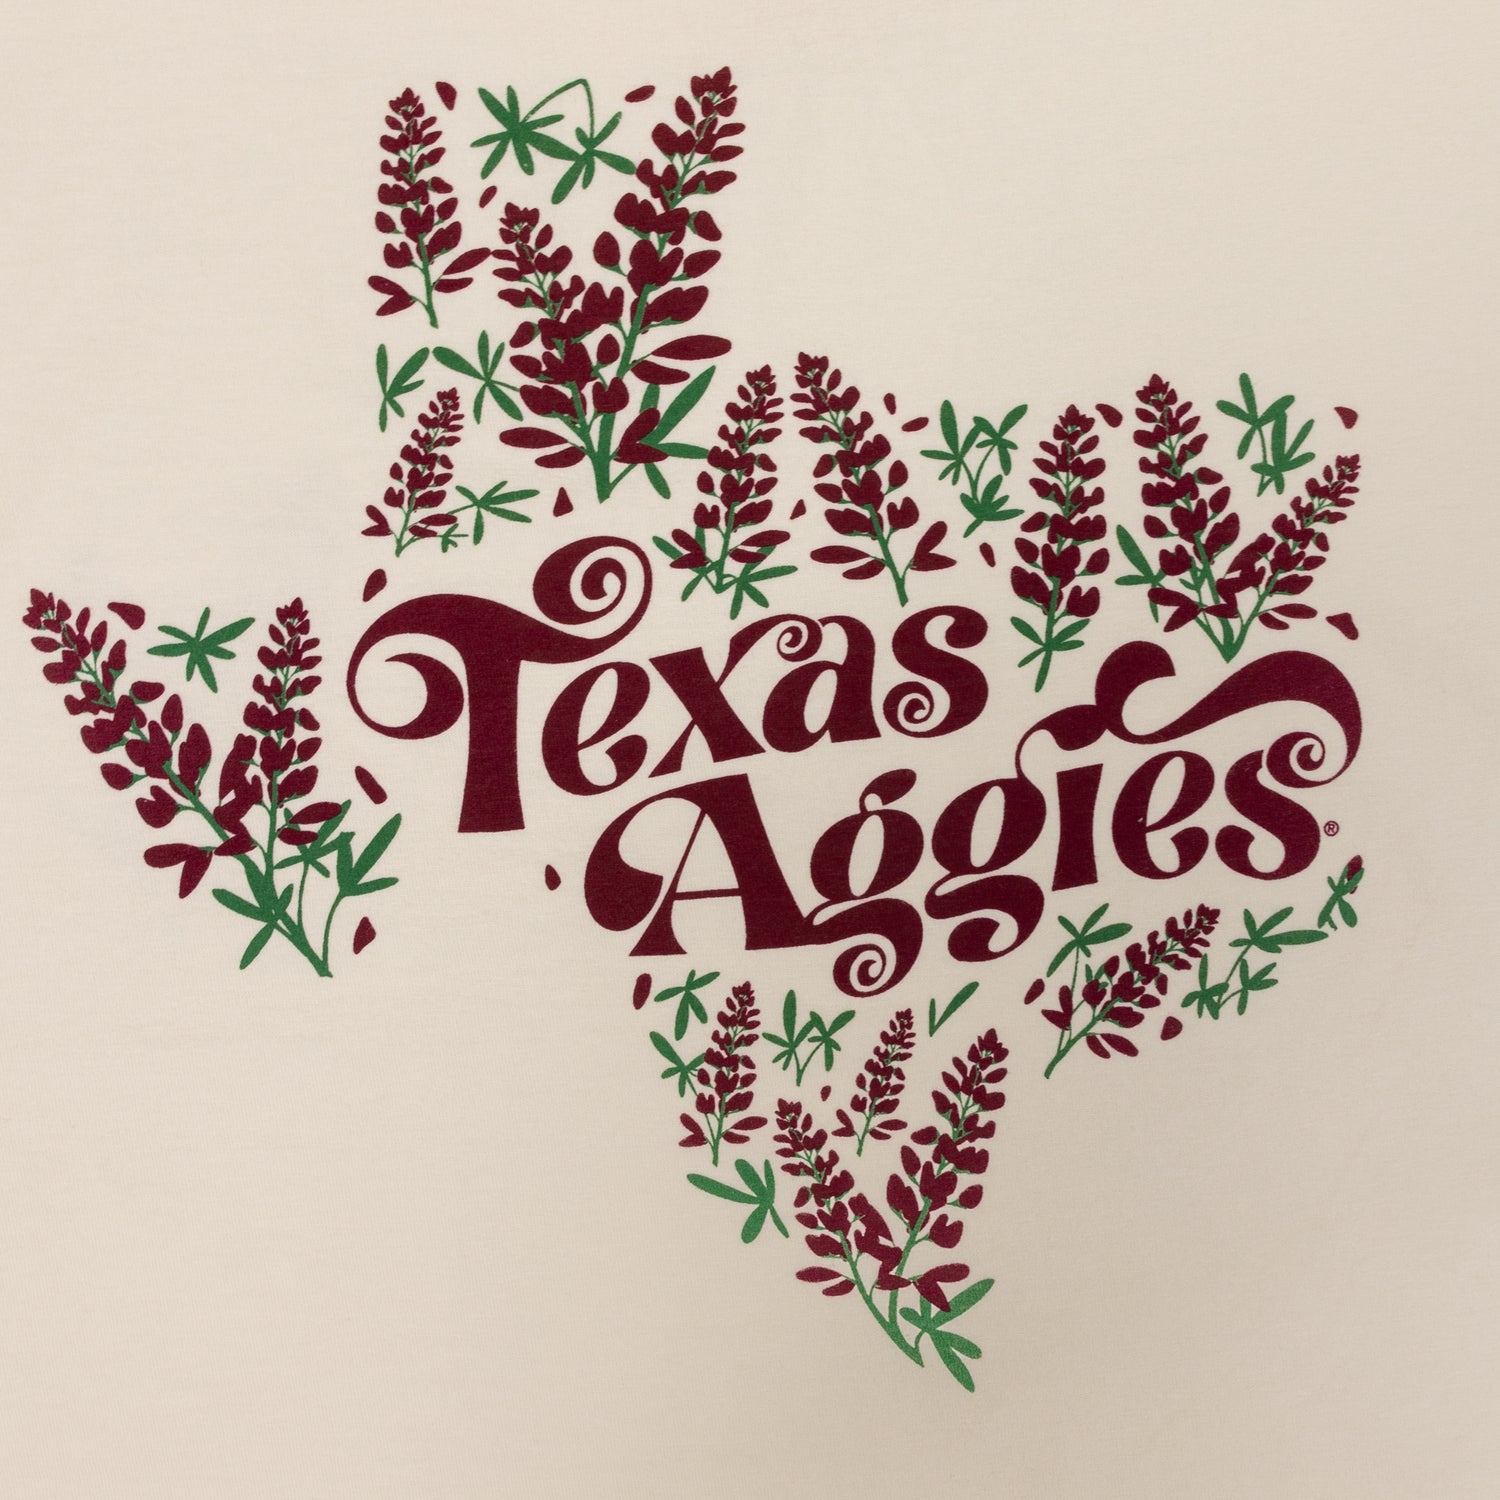 Texas Aggies Maroon Bonnet T-Shirt